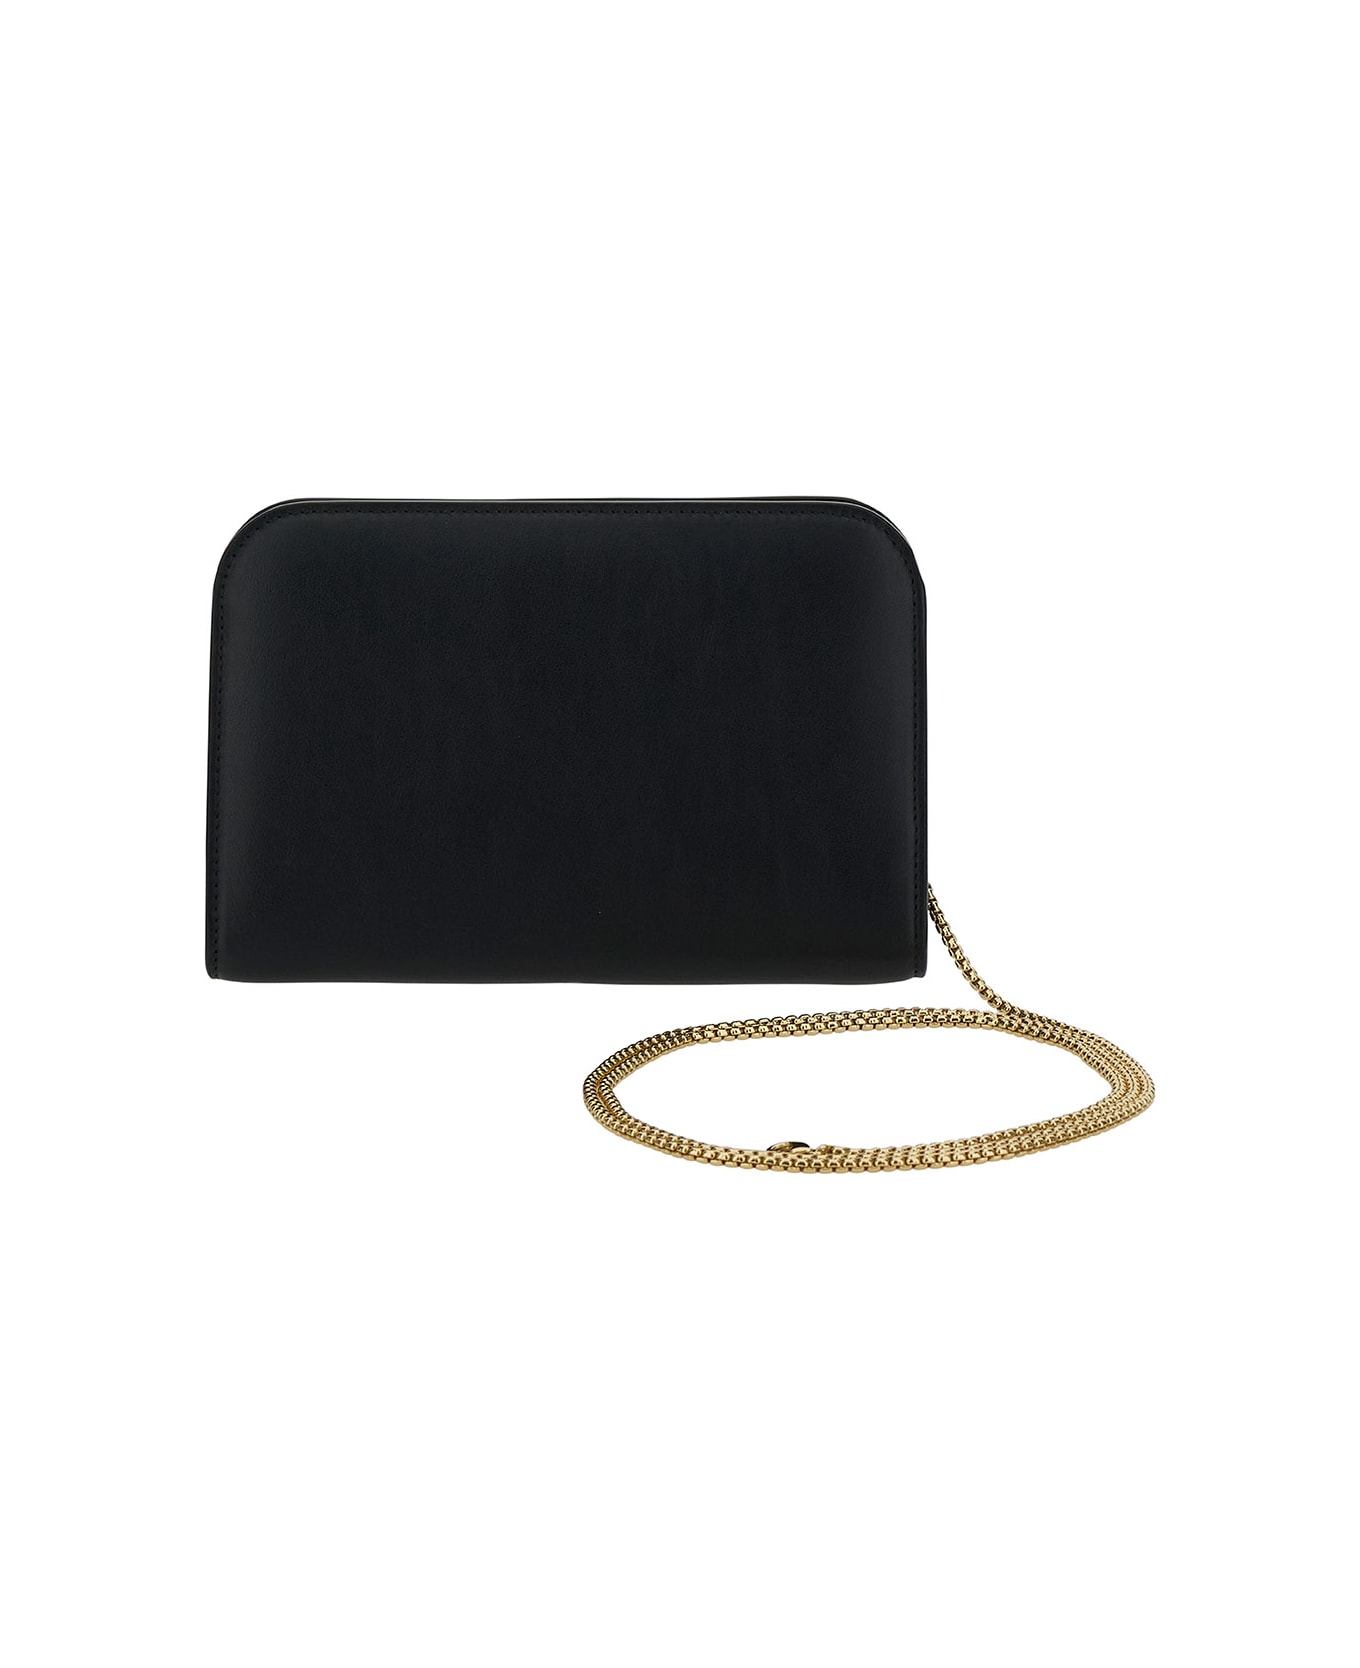 Ferragamo 'diana' Mini Clutch Bag In Black Calf Leather - Black